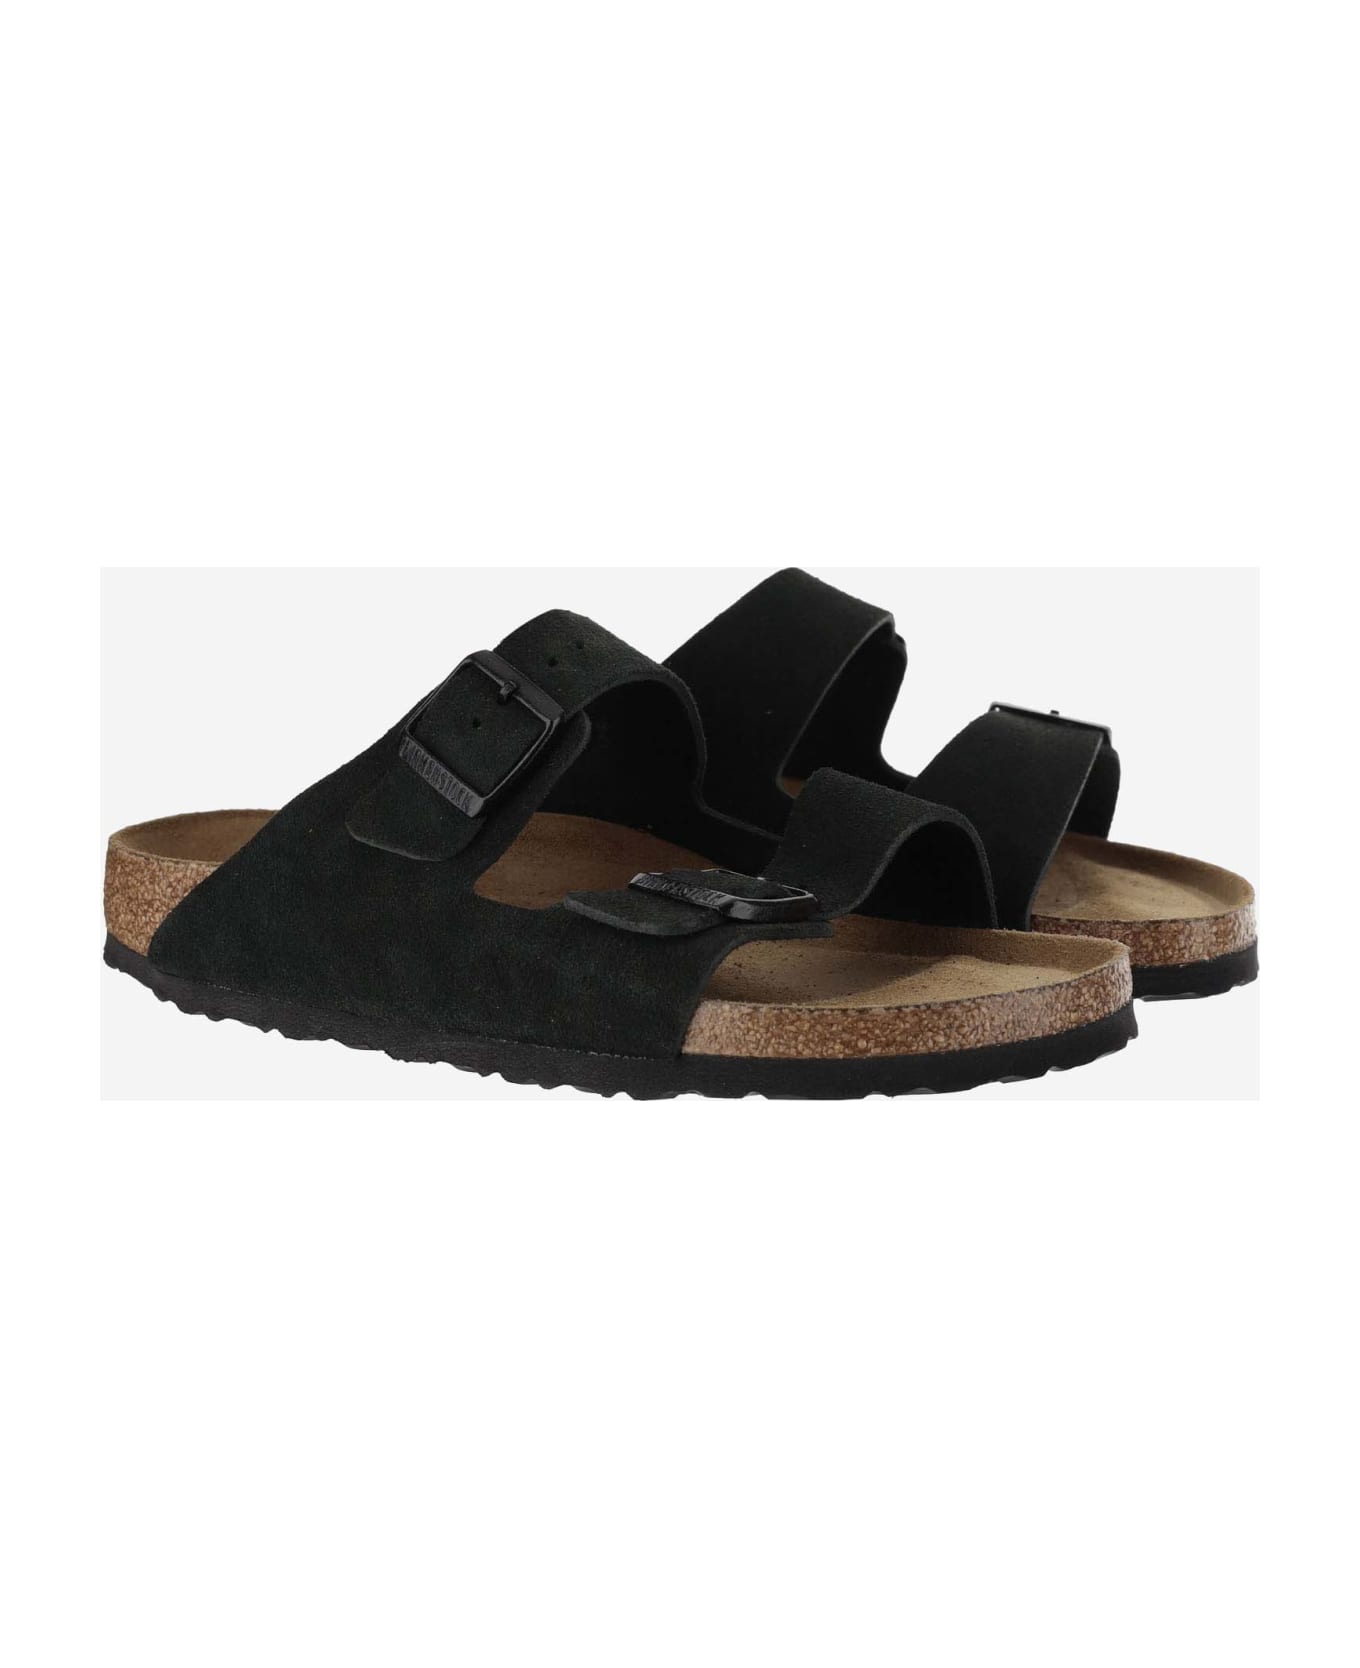 Birkenstock Arizona Suede Sandals - Black